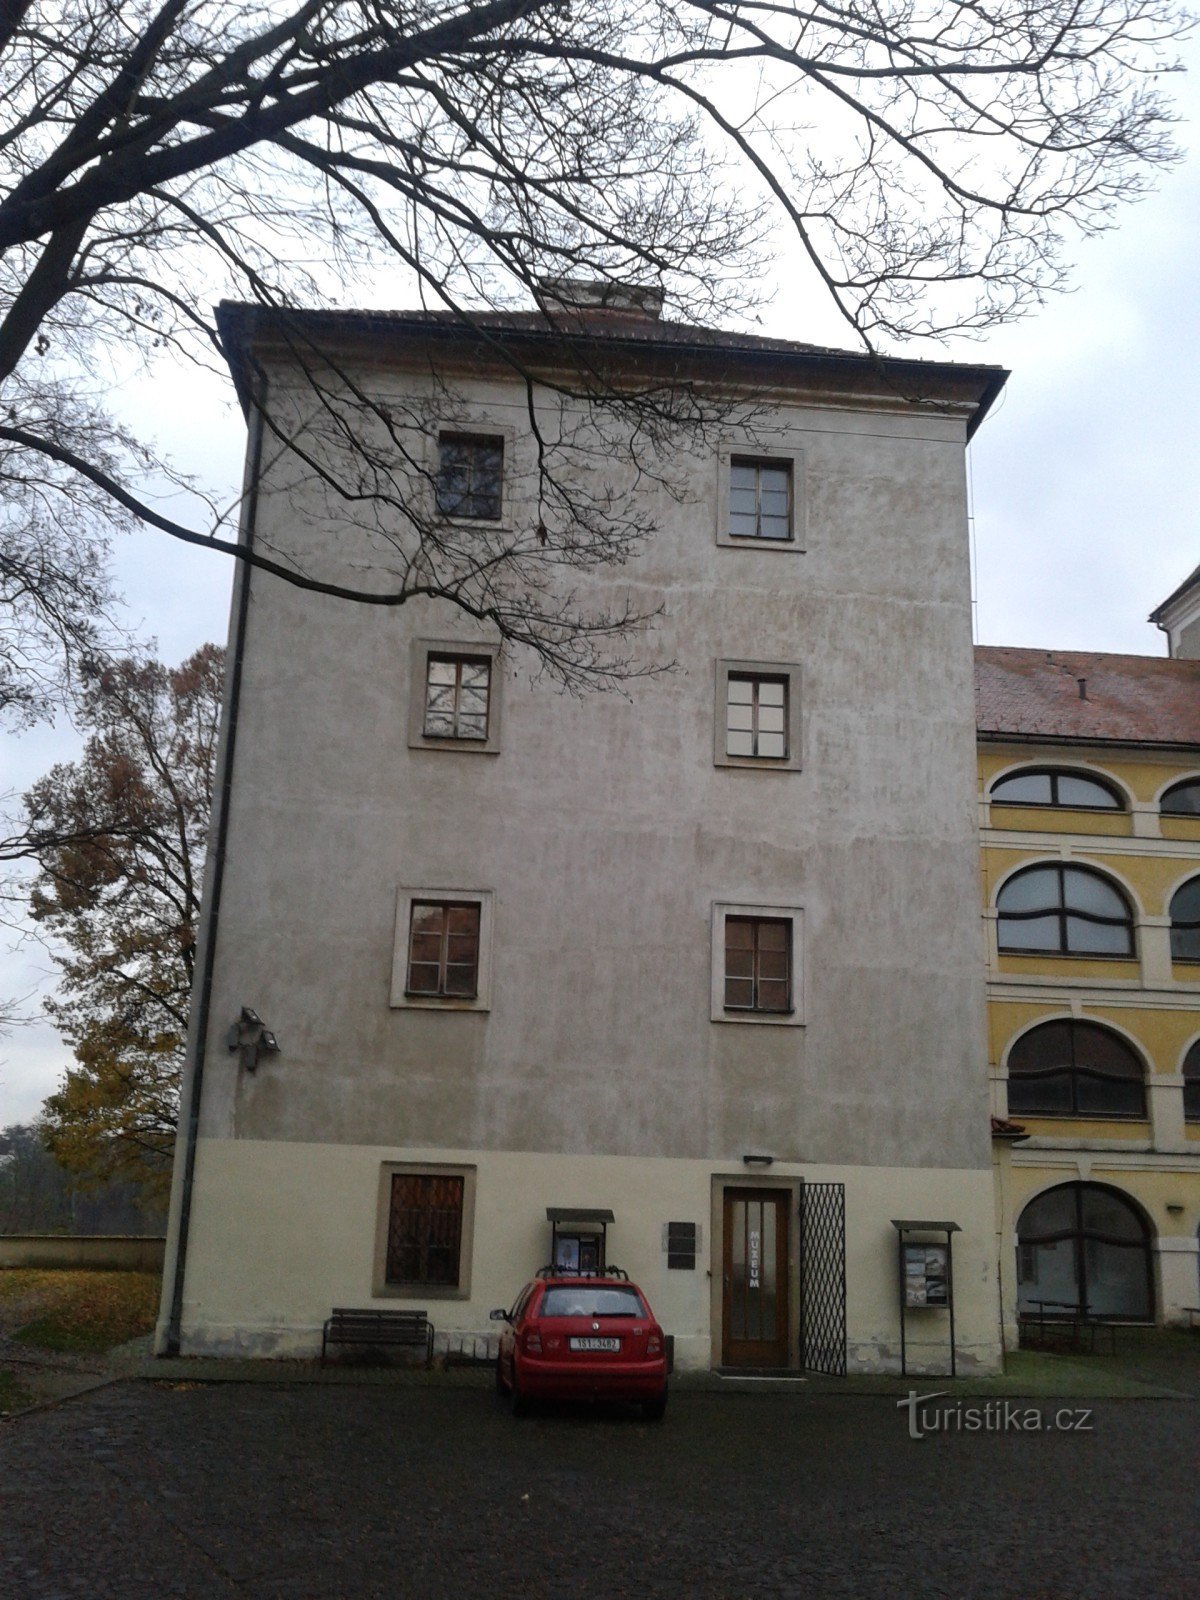 Mladá Boleslavs slott